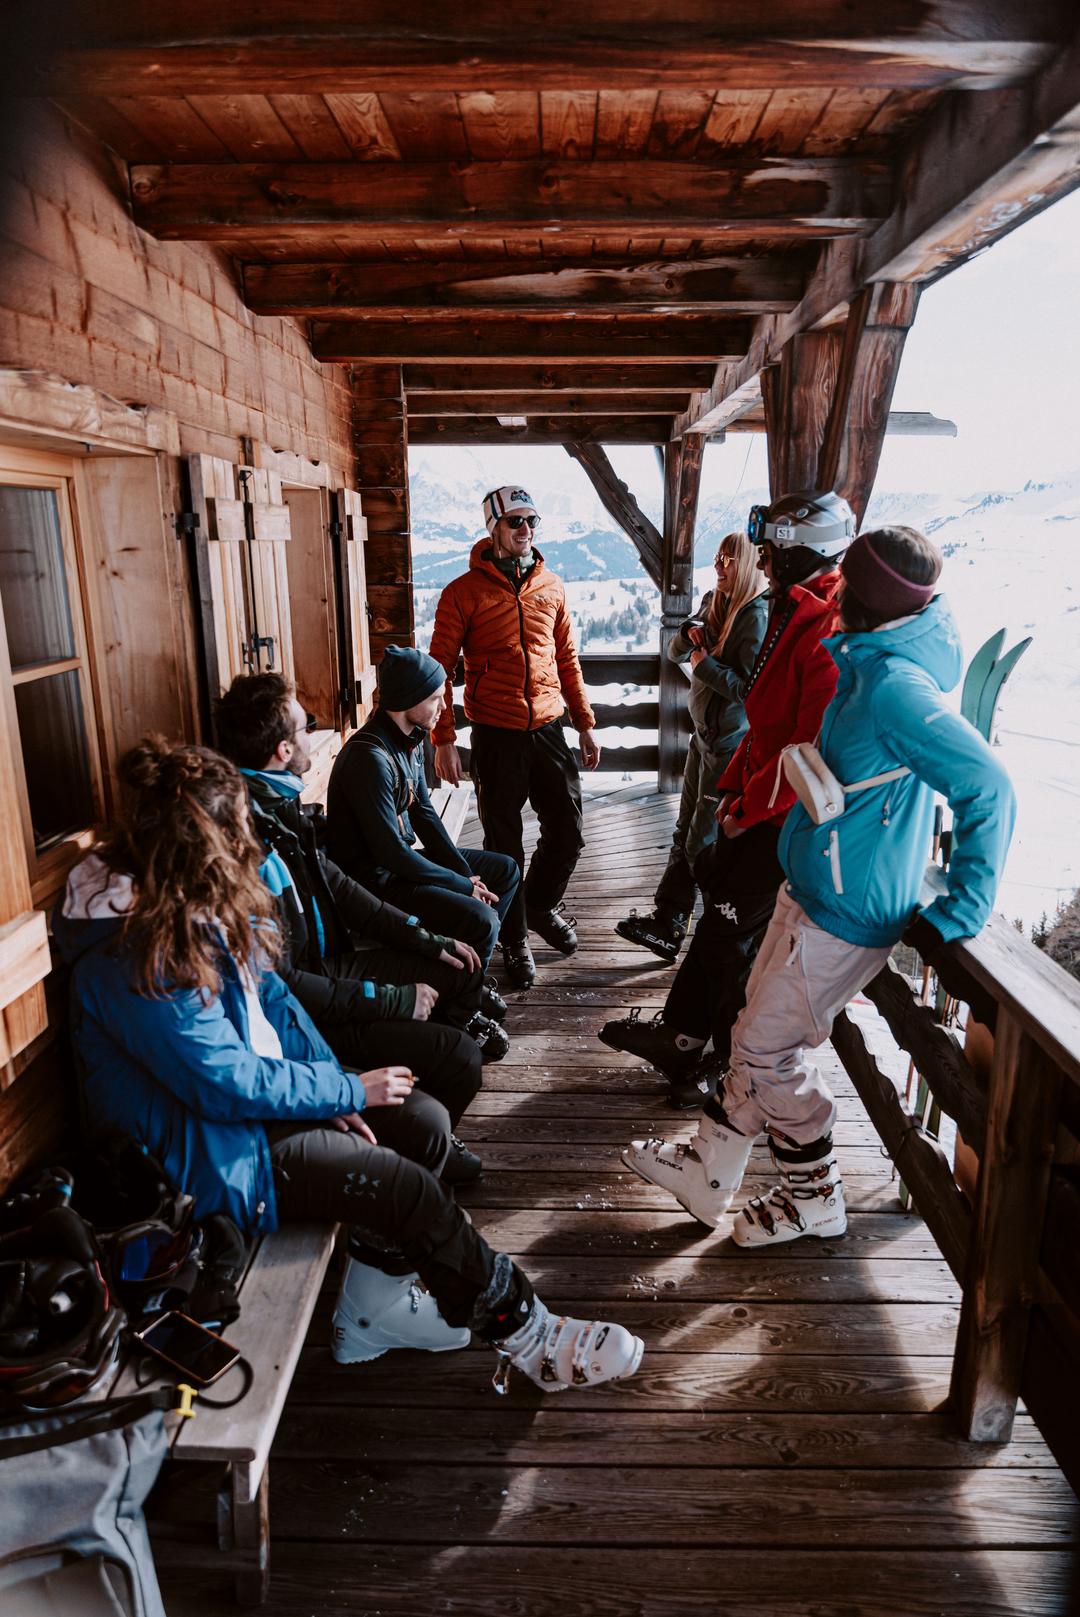 skihütte